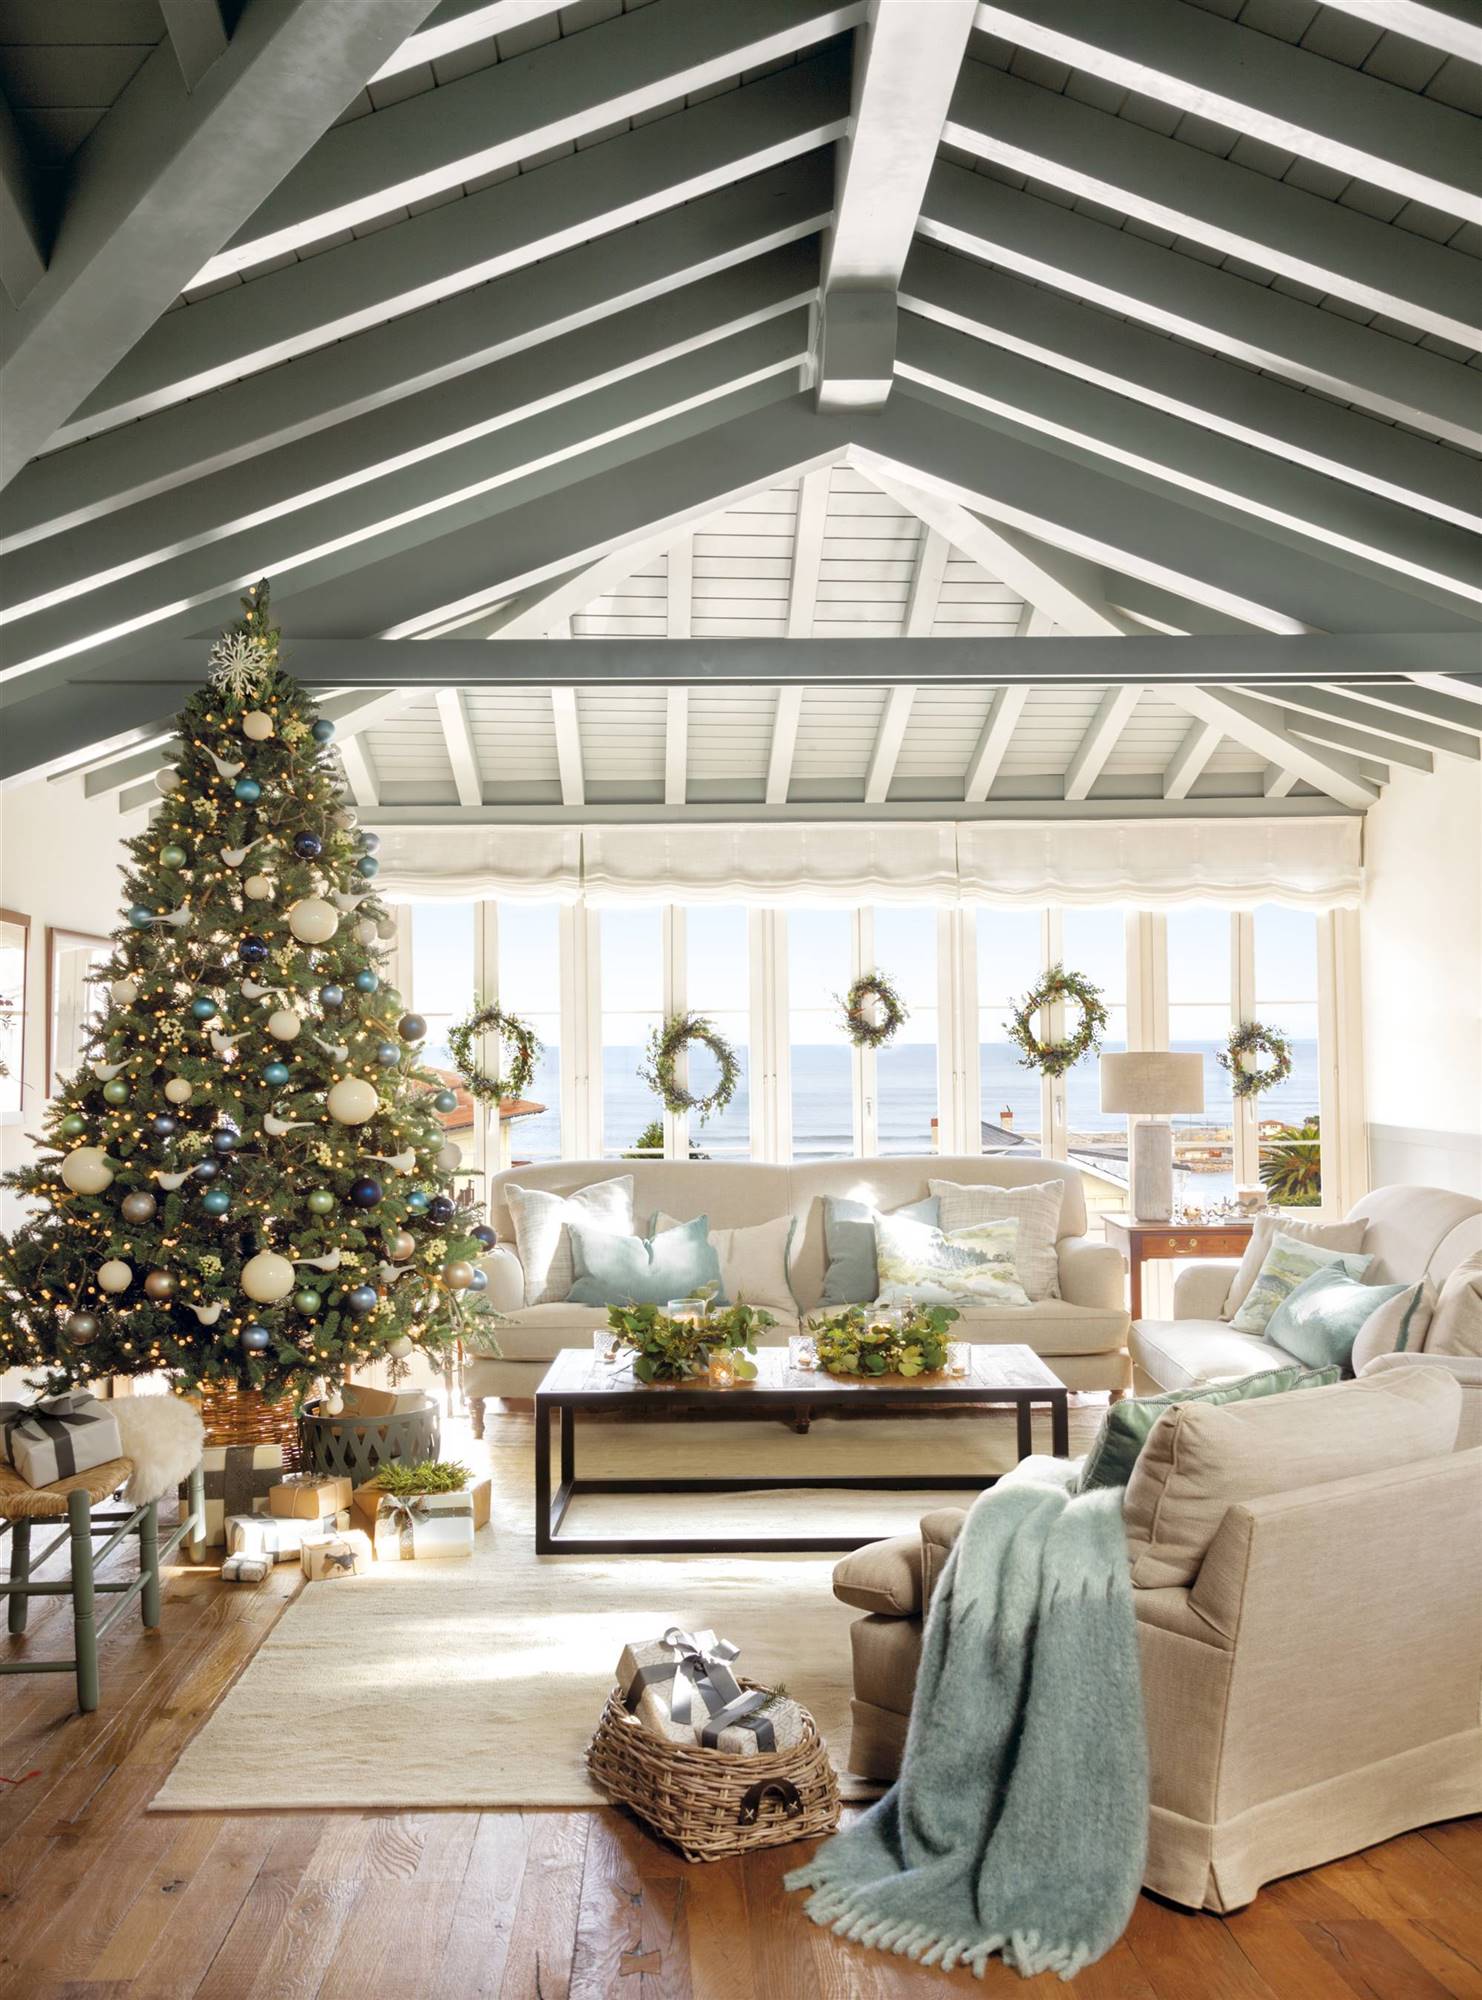 Salón con techos abuhardillados decorado por Navidad. 